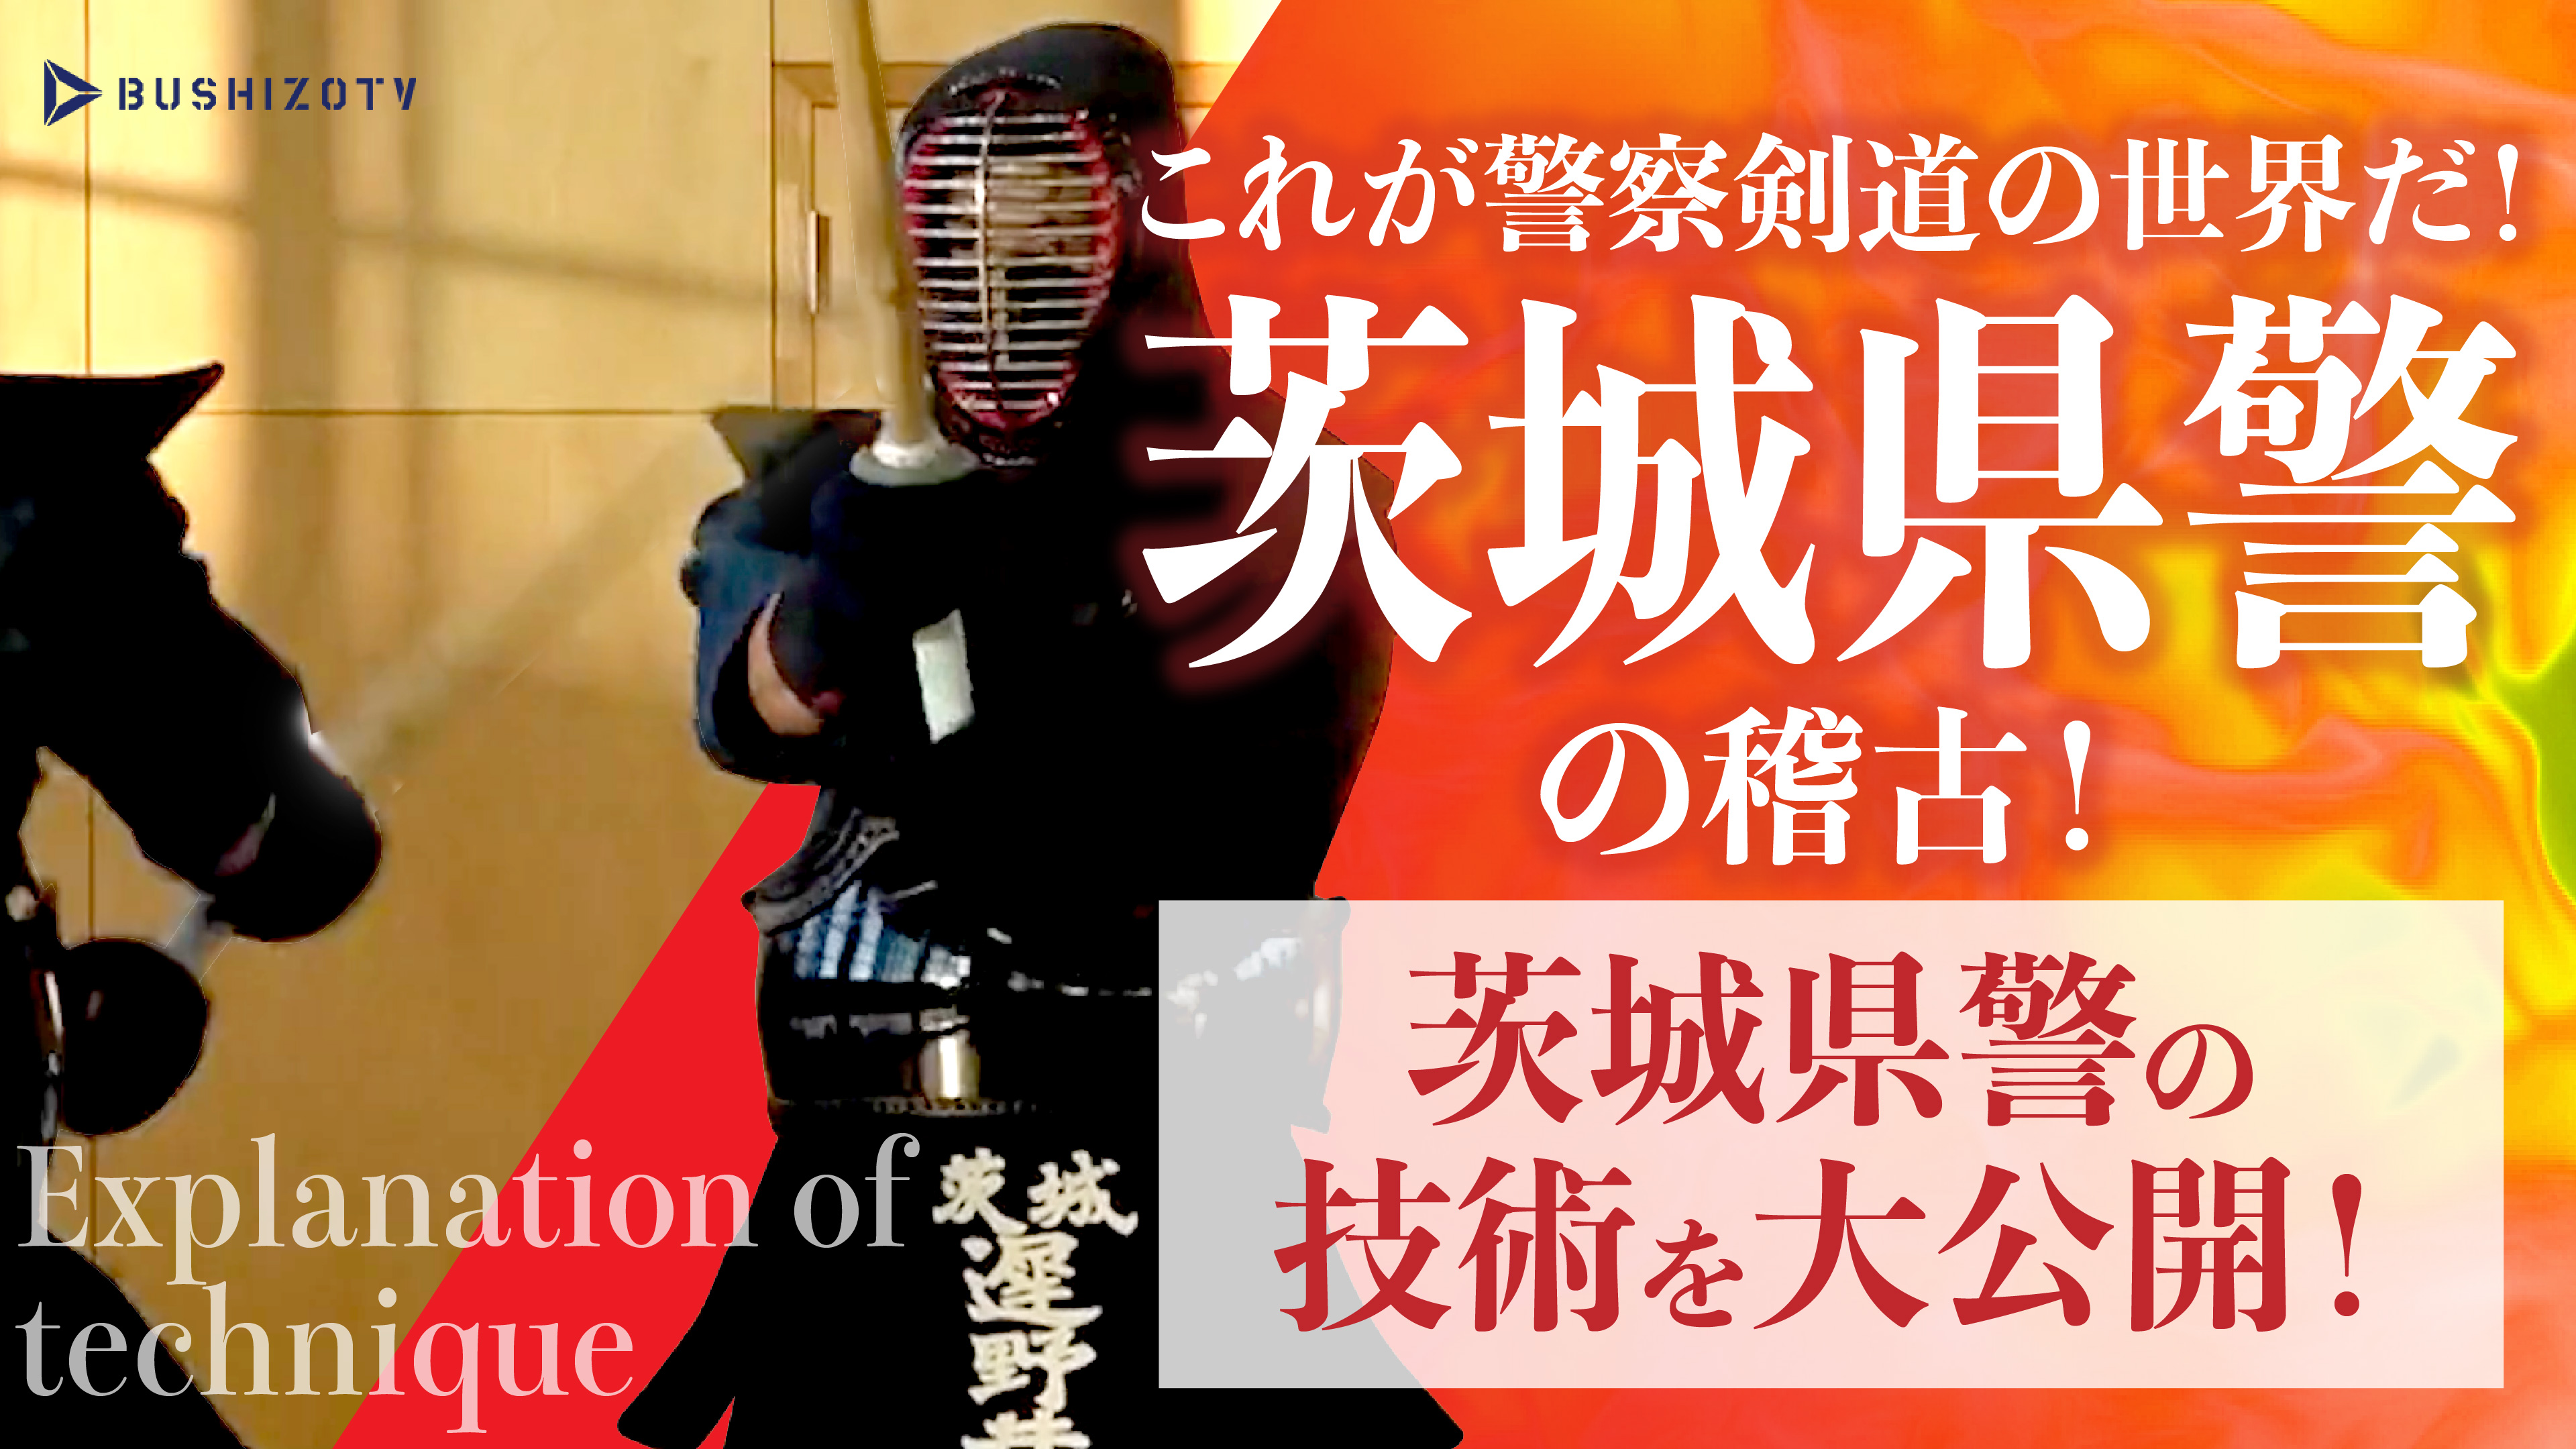 これが警察剣道の世界だ！茨城県警剣道特練の稽古